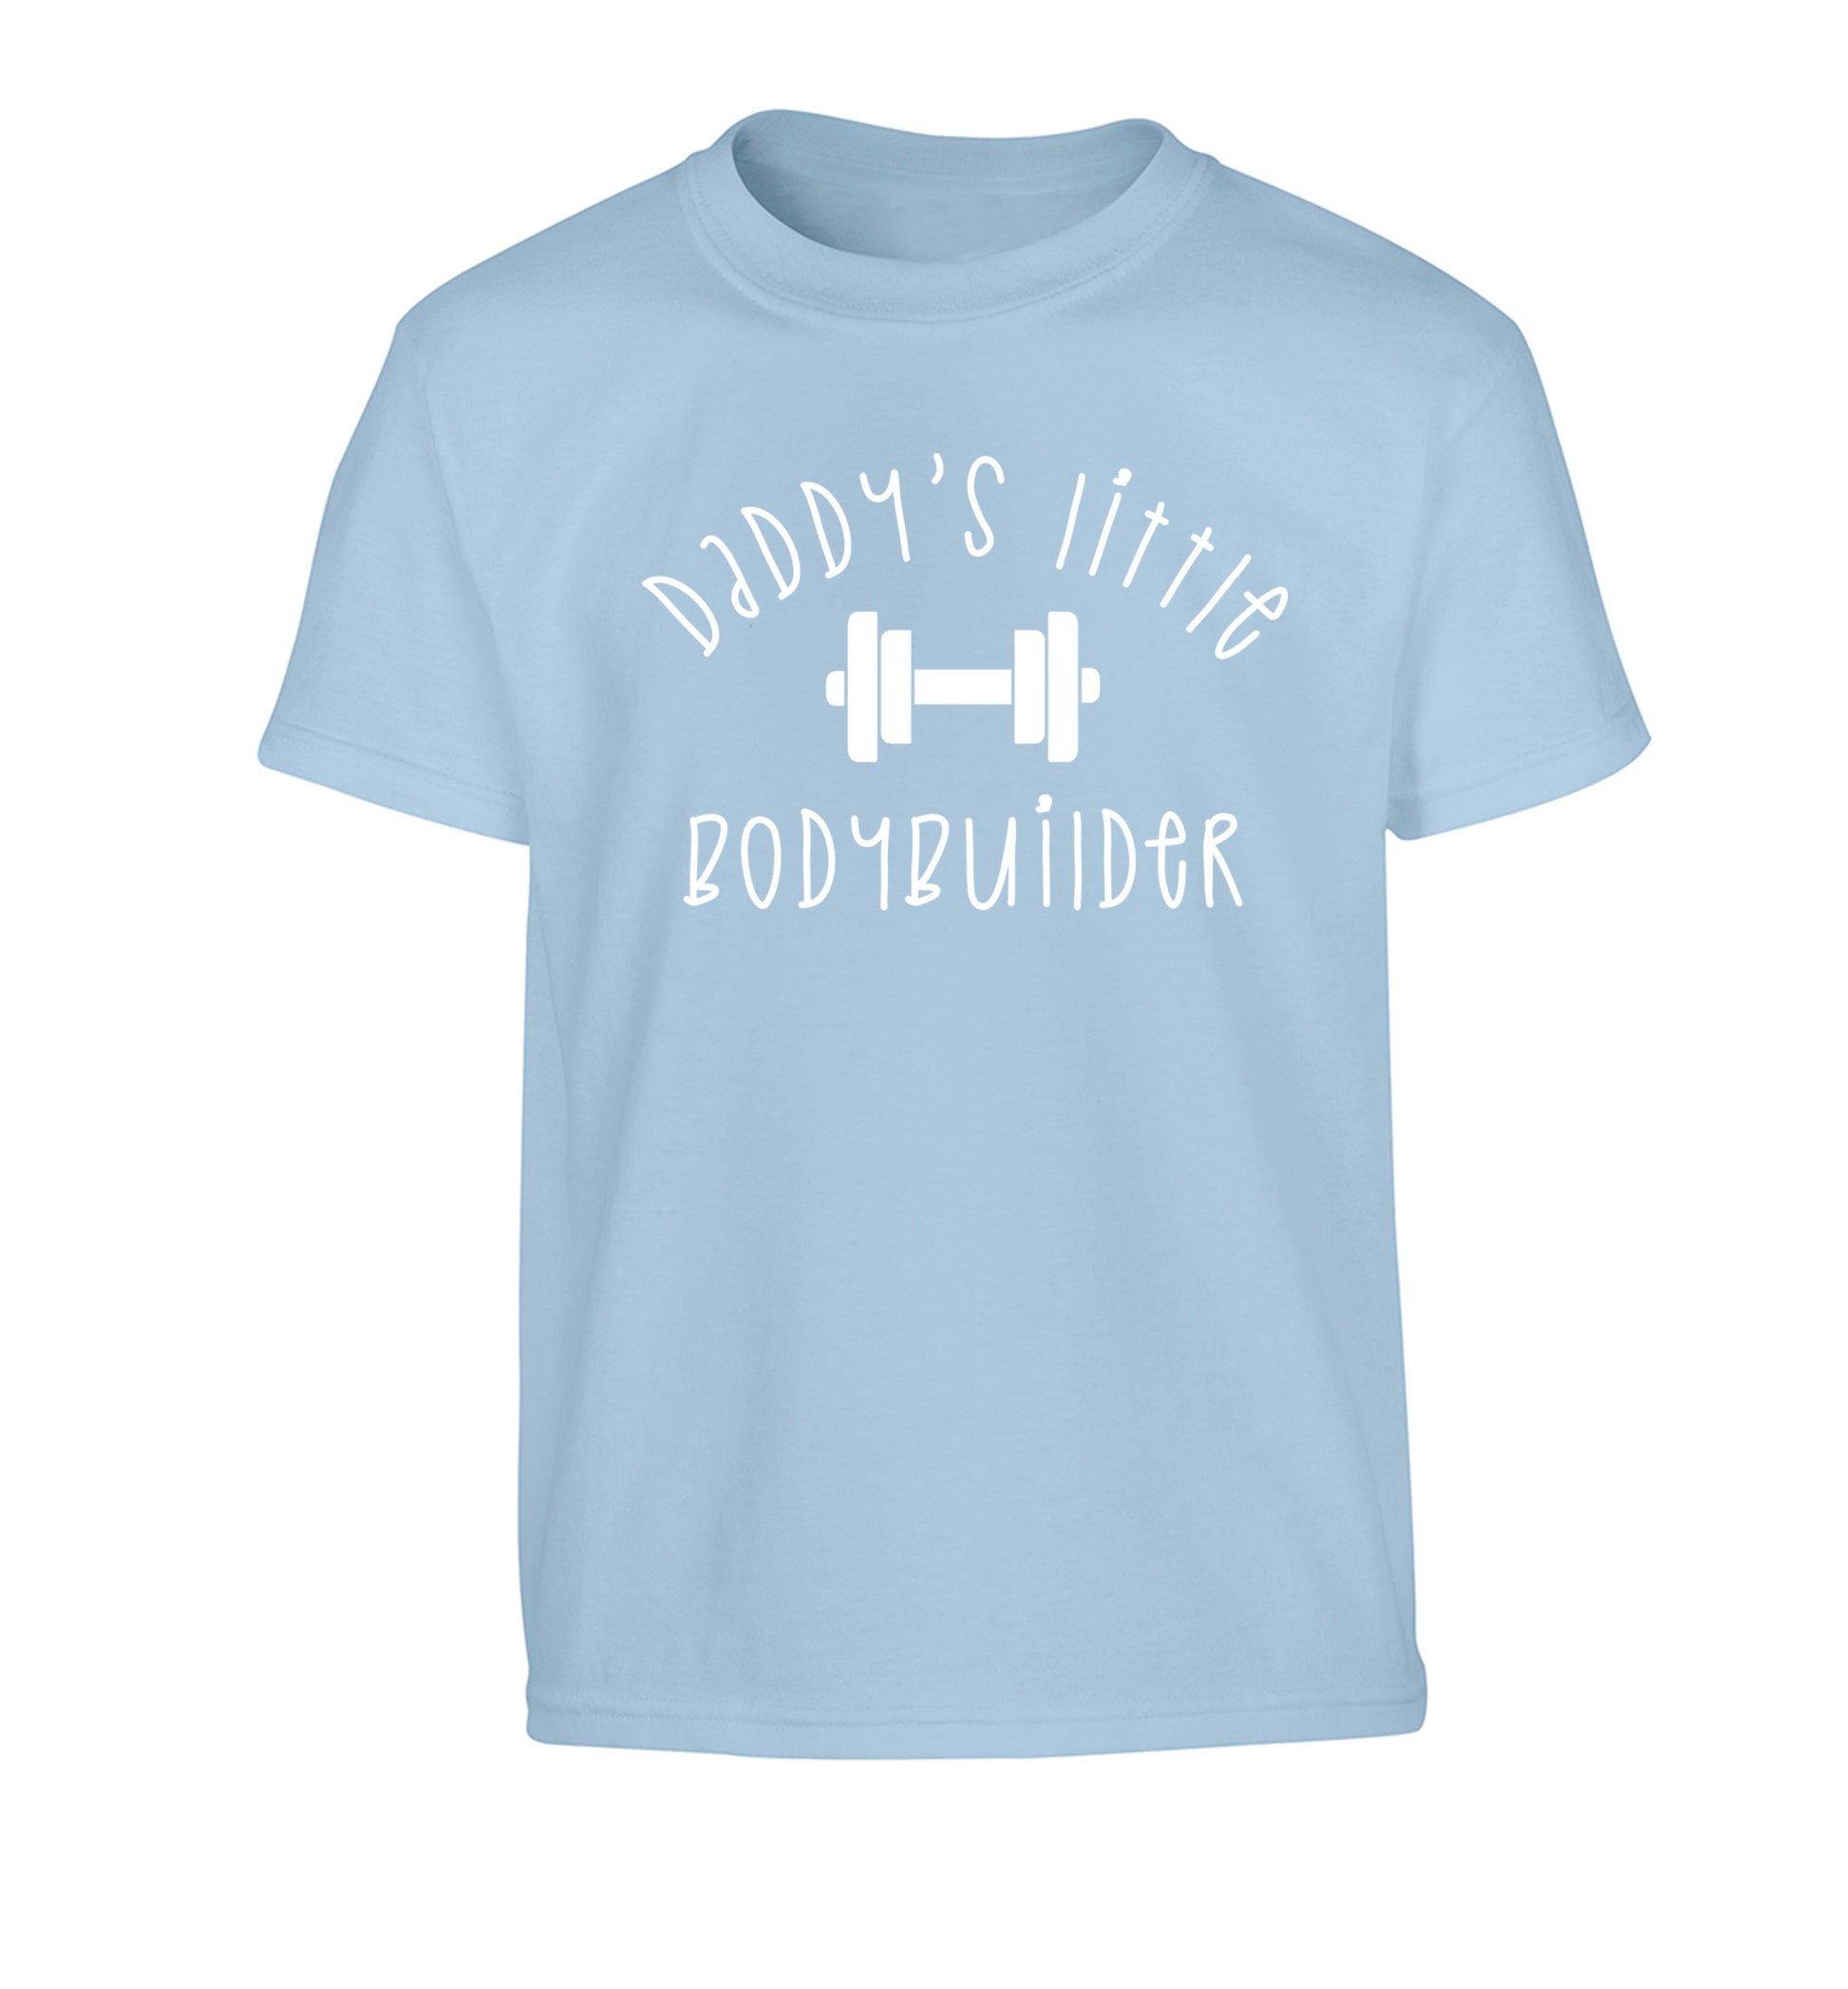 Daddy's little bodybuilder Children's light blue Tshirt 12-14 Years